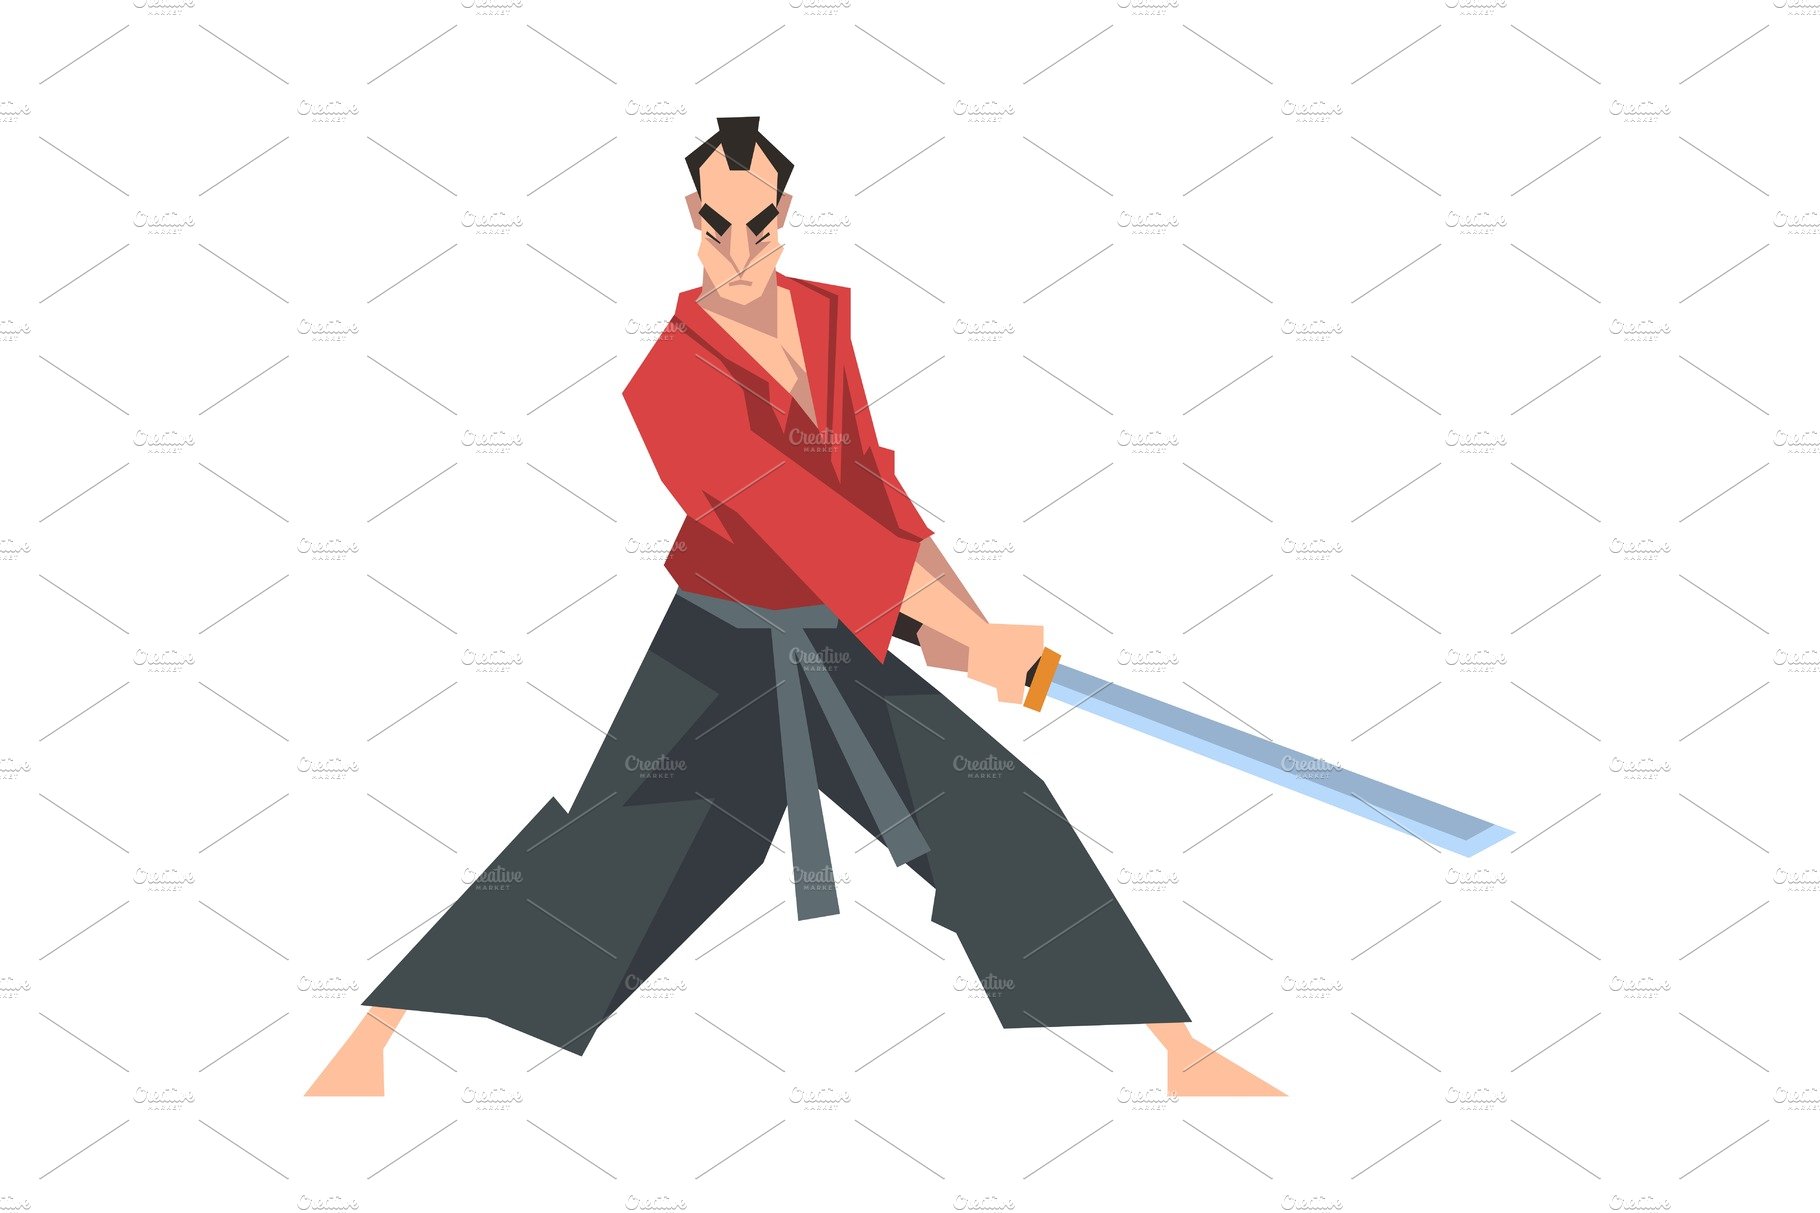 samurai fight poses